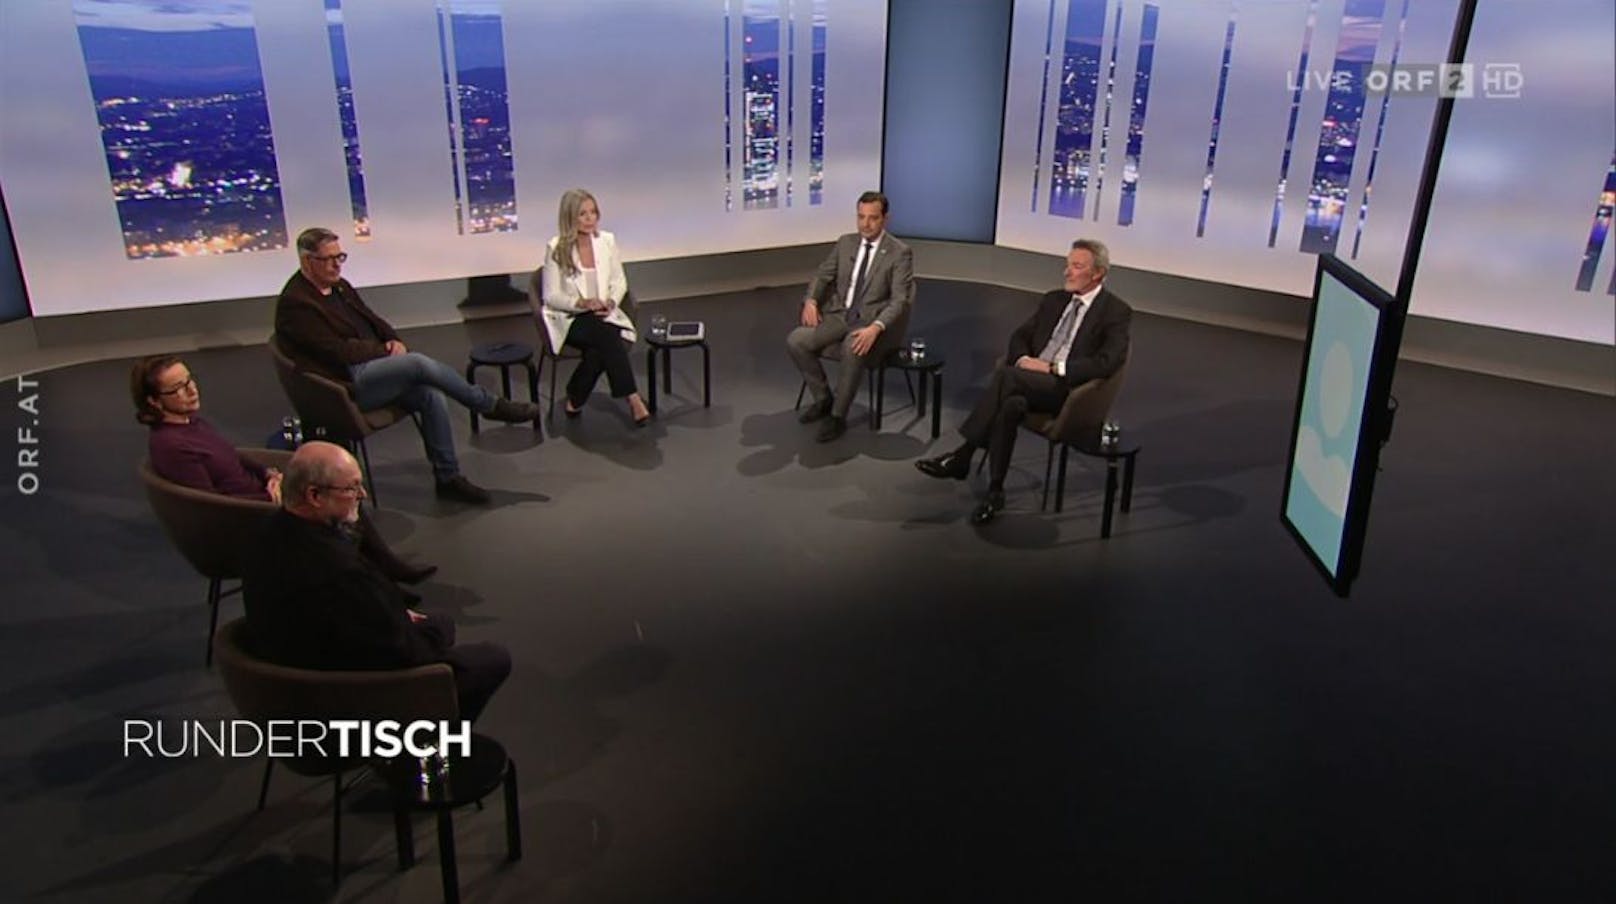 "Runder Tisch" Sondersendung zur vierten Coronawelle im ORF am 15. November 2021.